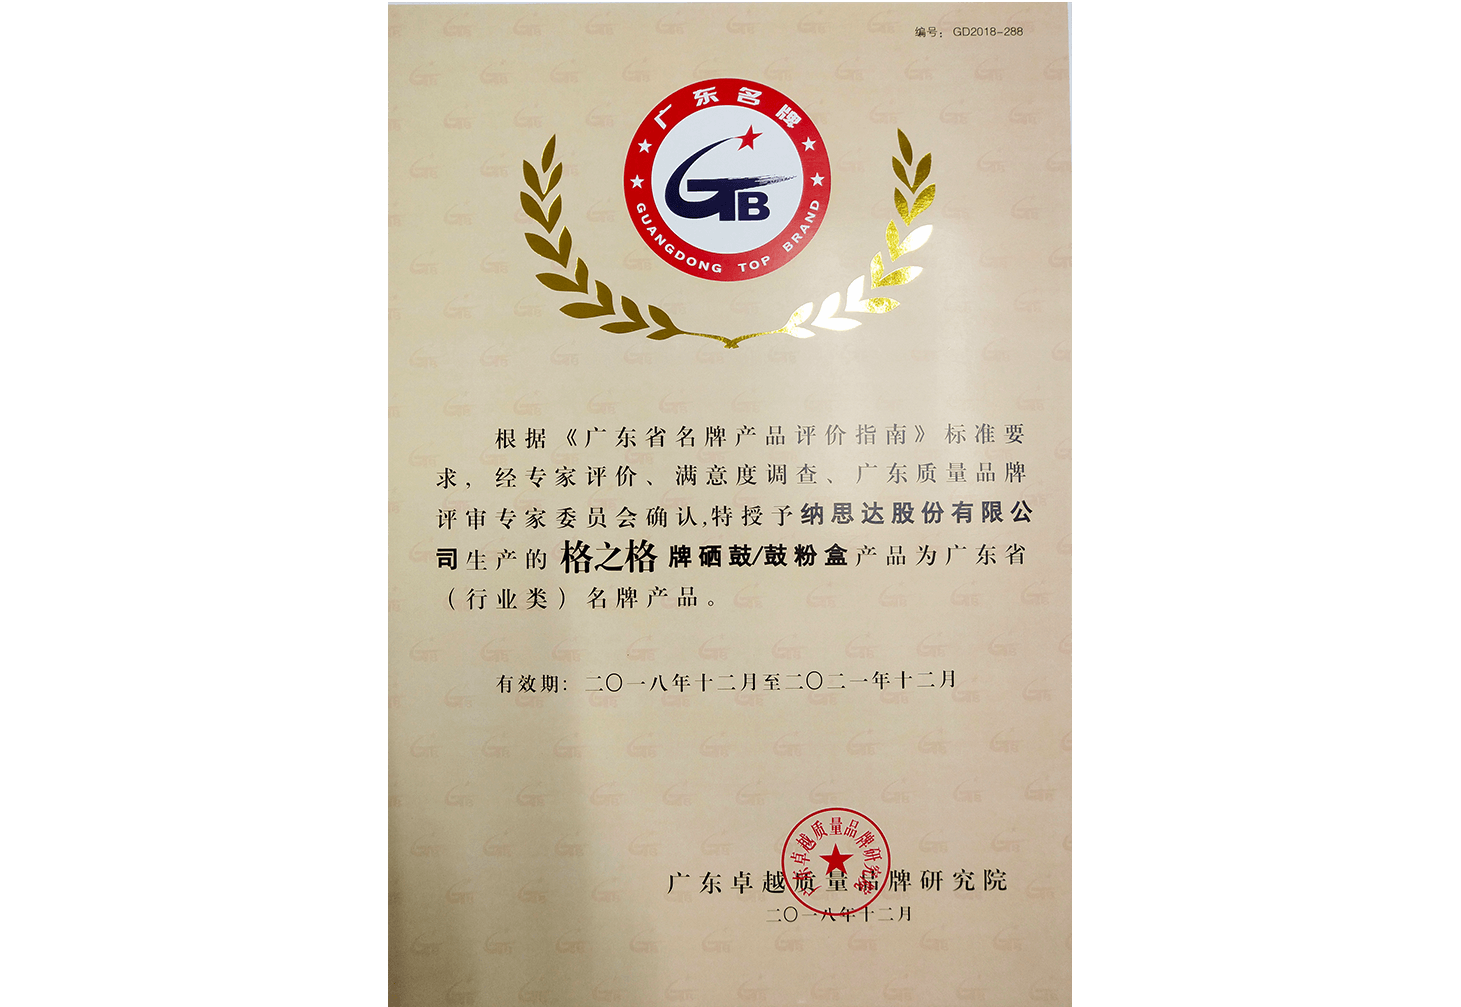 2018年广东省（行业类）名牌开运彩票
证书（鼓粉盒）